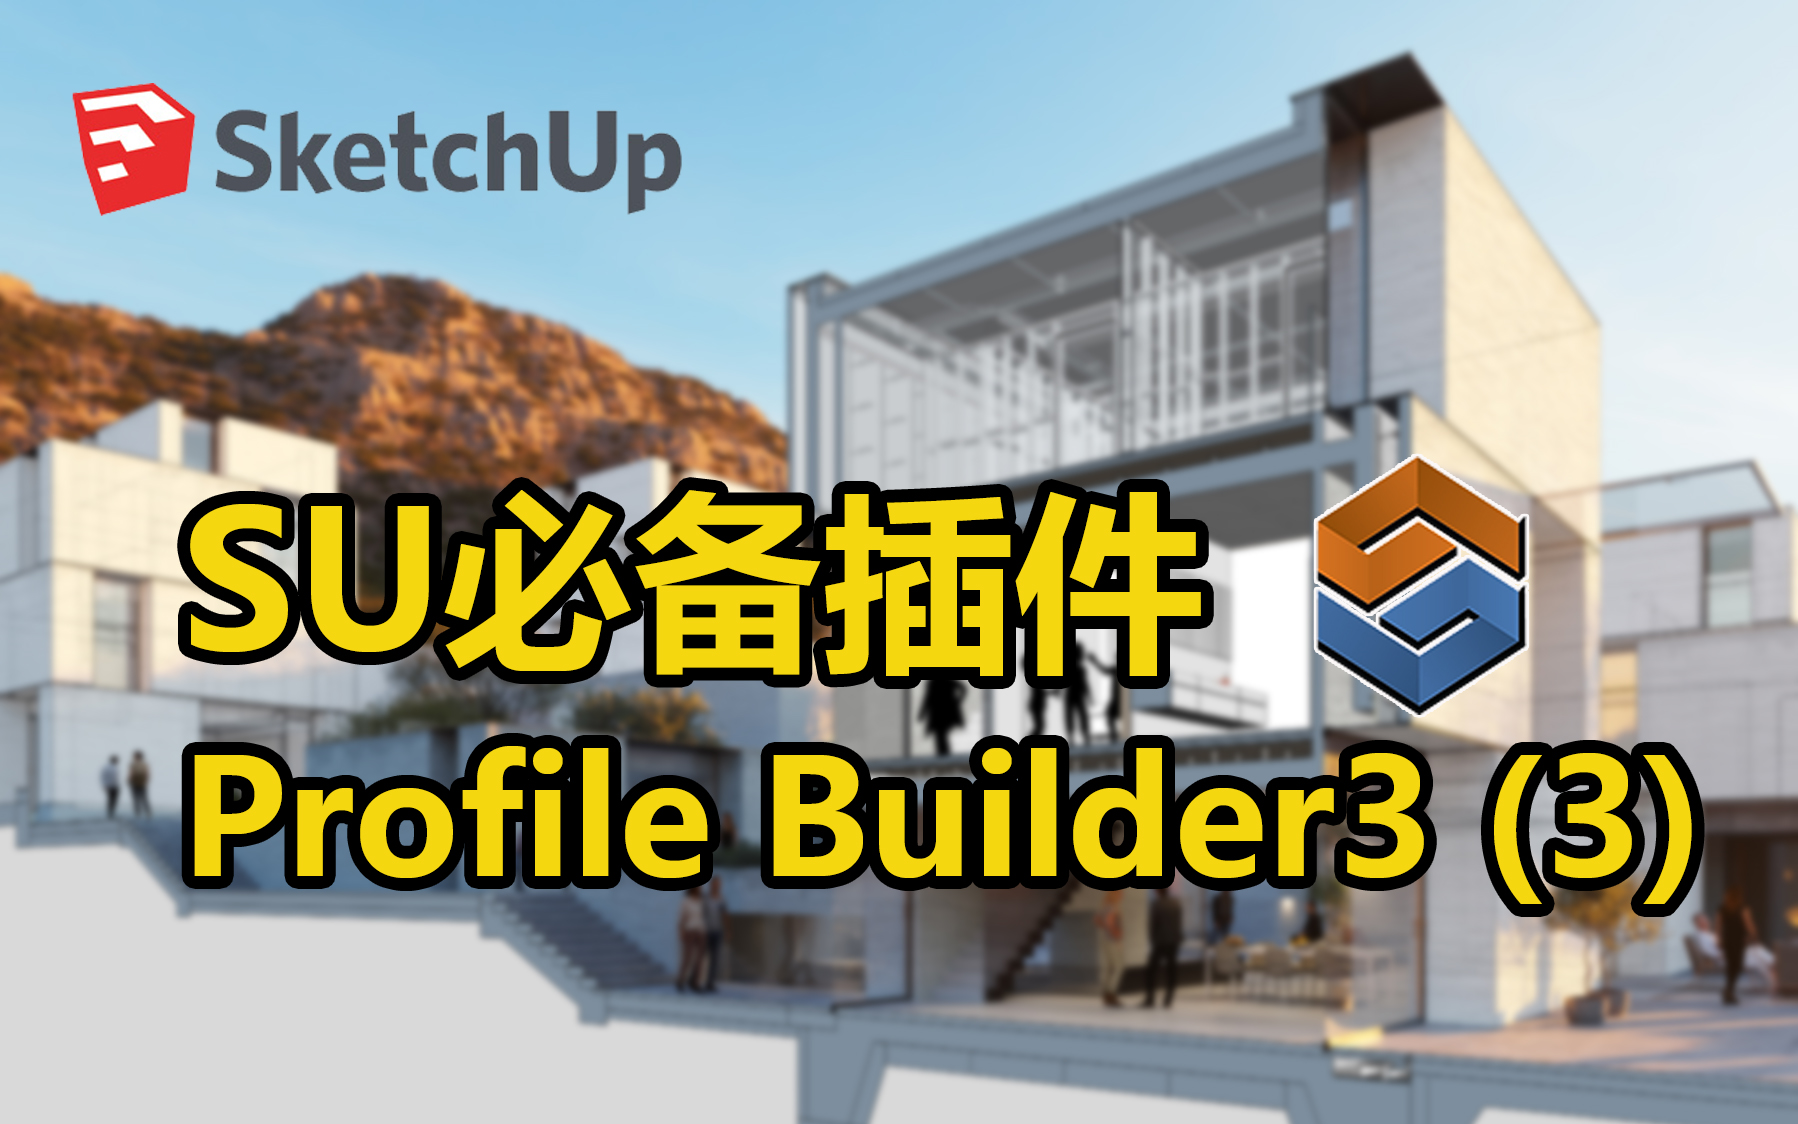 sketchup profile builder 3 crack